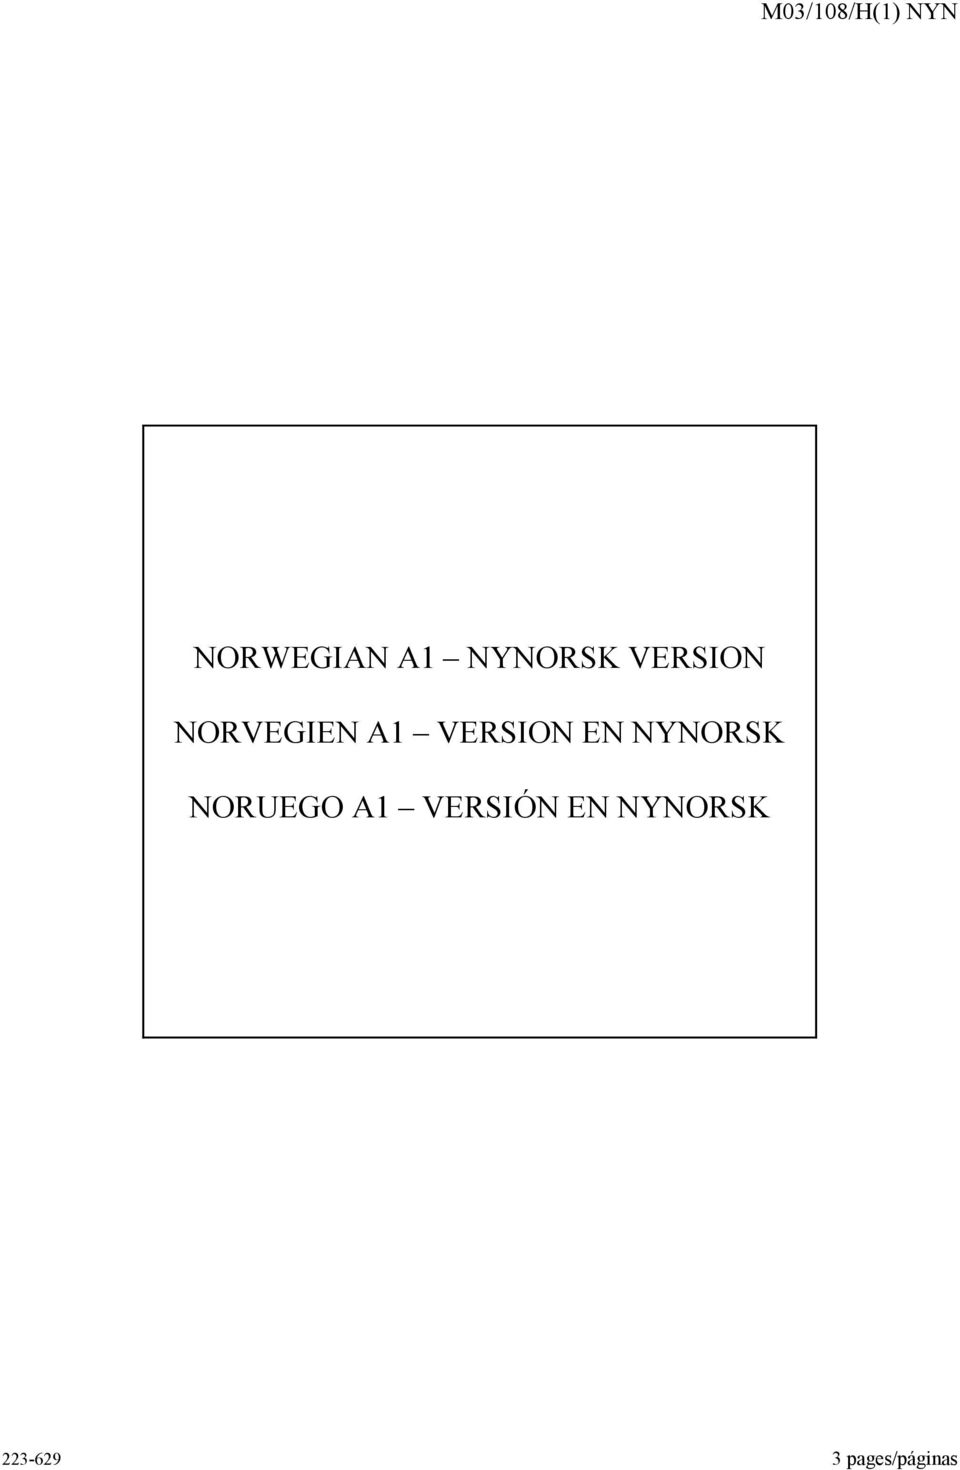 VERSION EN NYNORSK NORUEGO A1